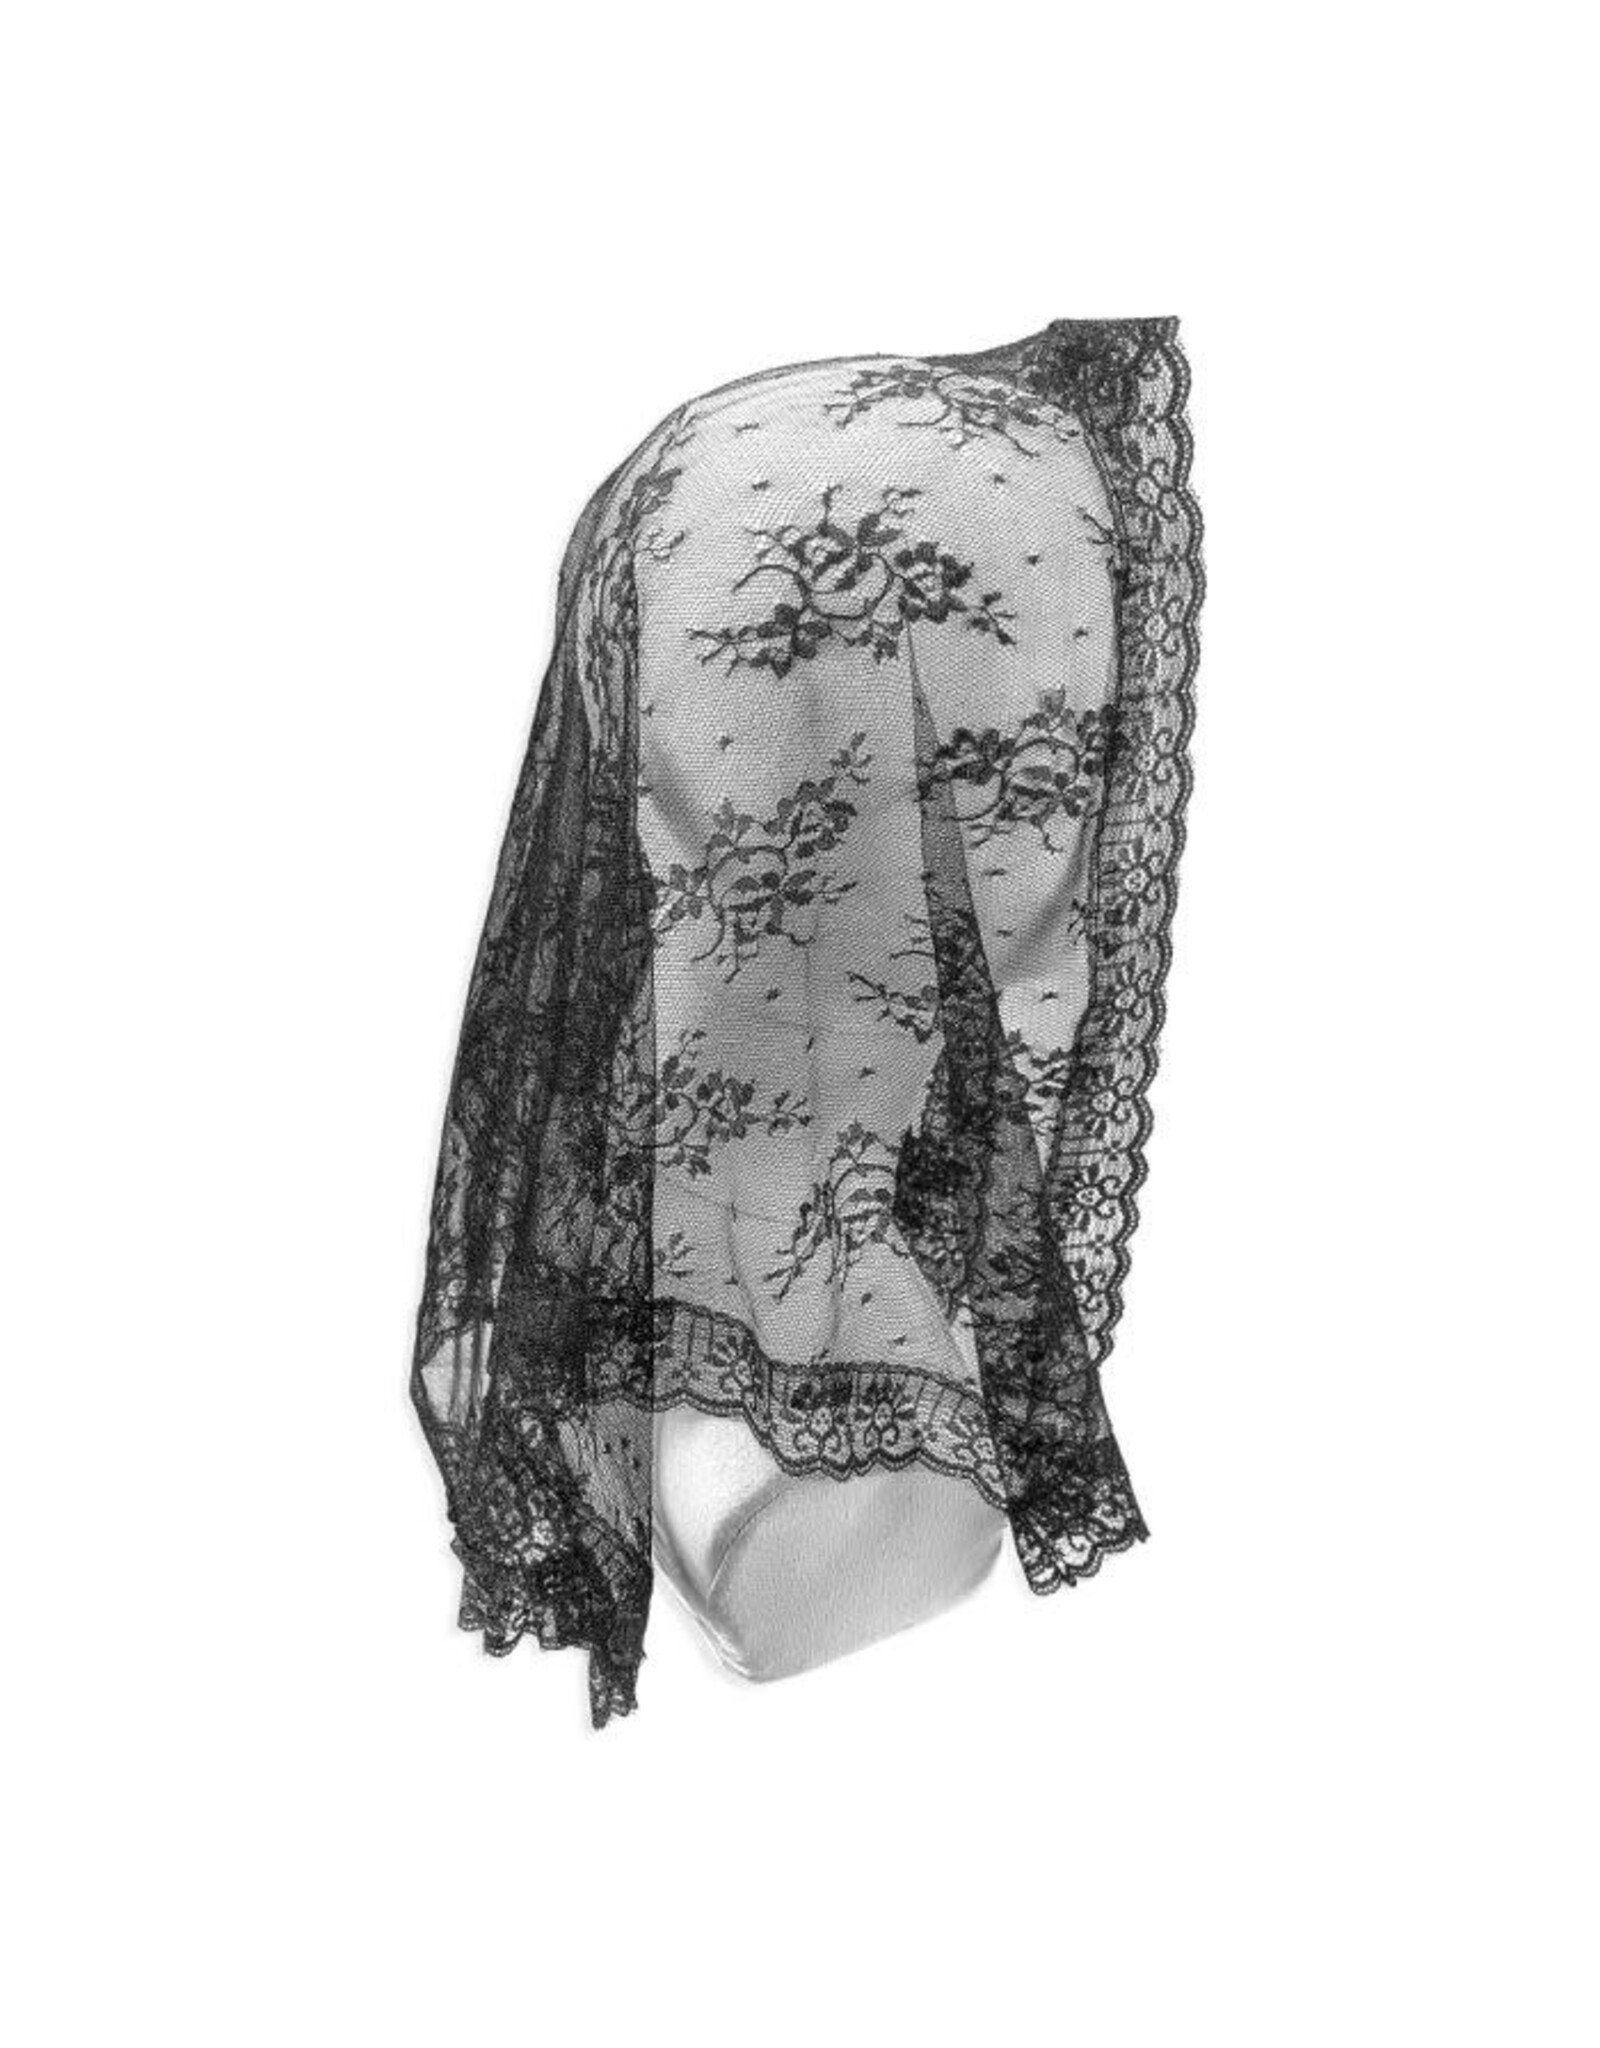 Hirten Mantilla (Veil) - Black Nylon Lace